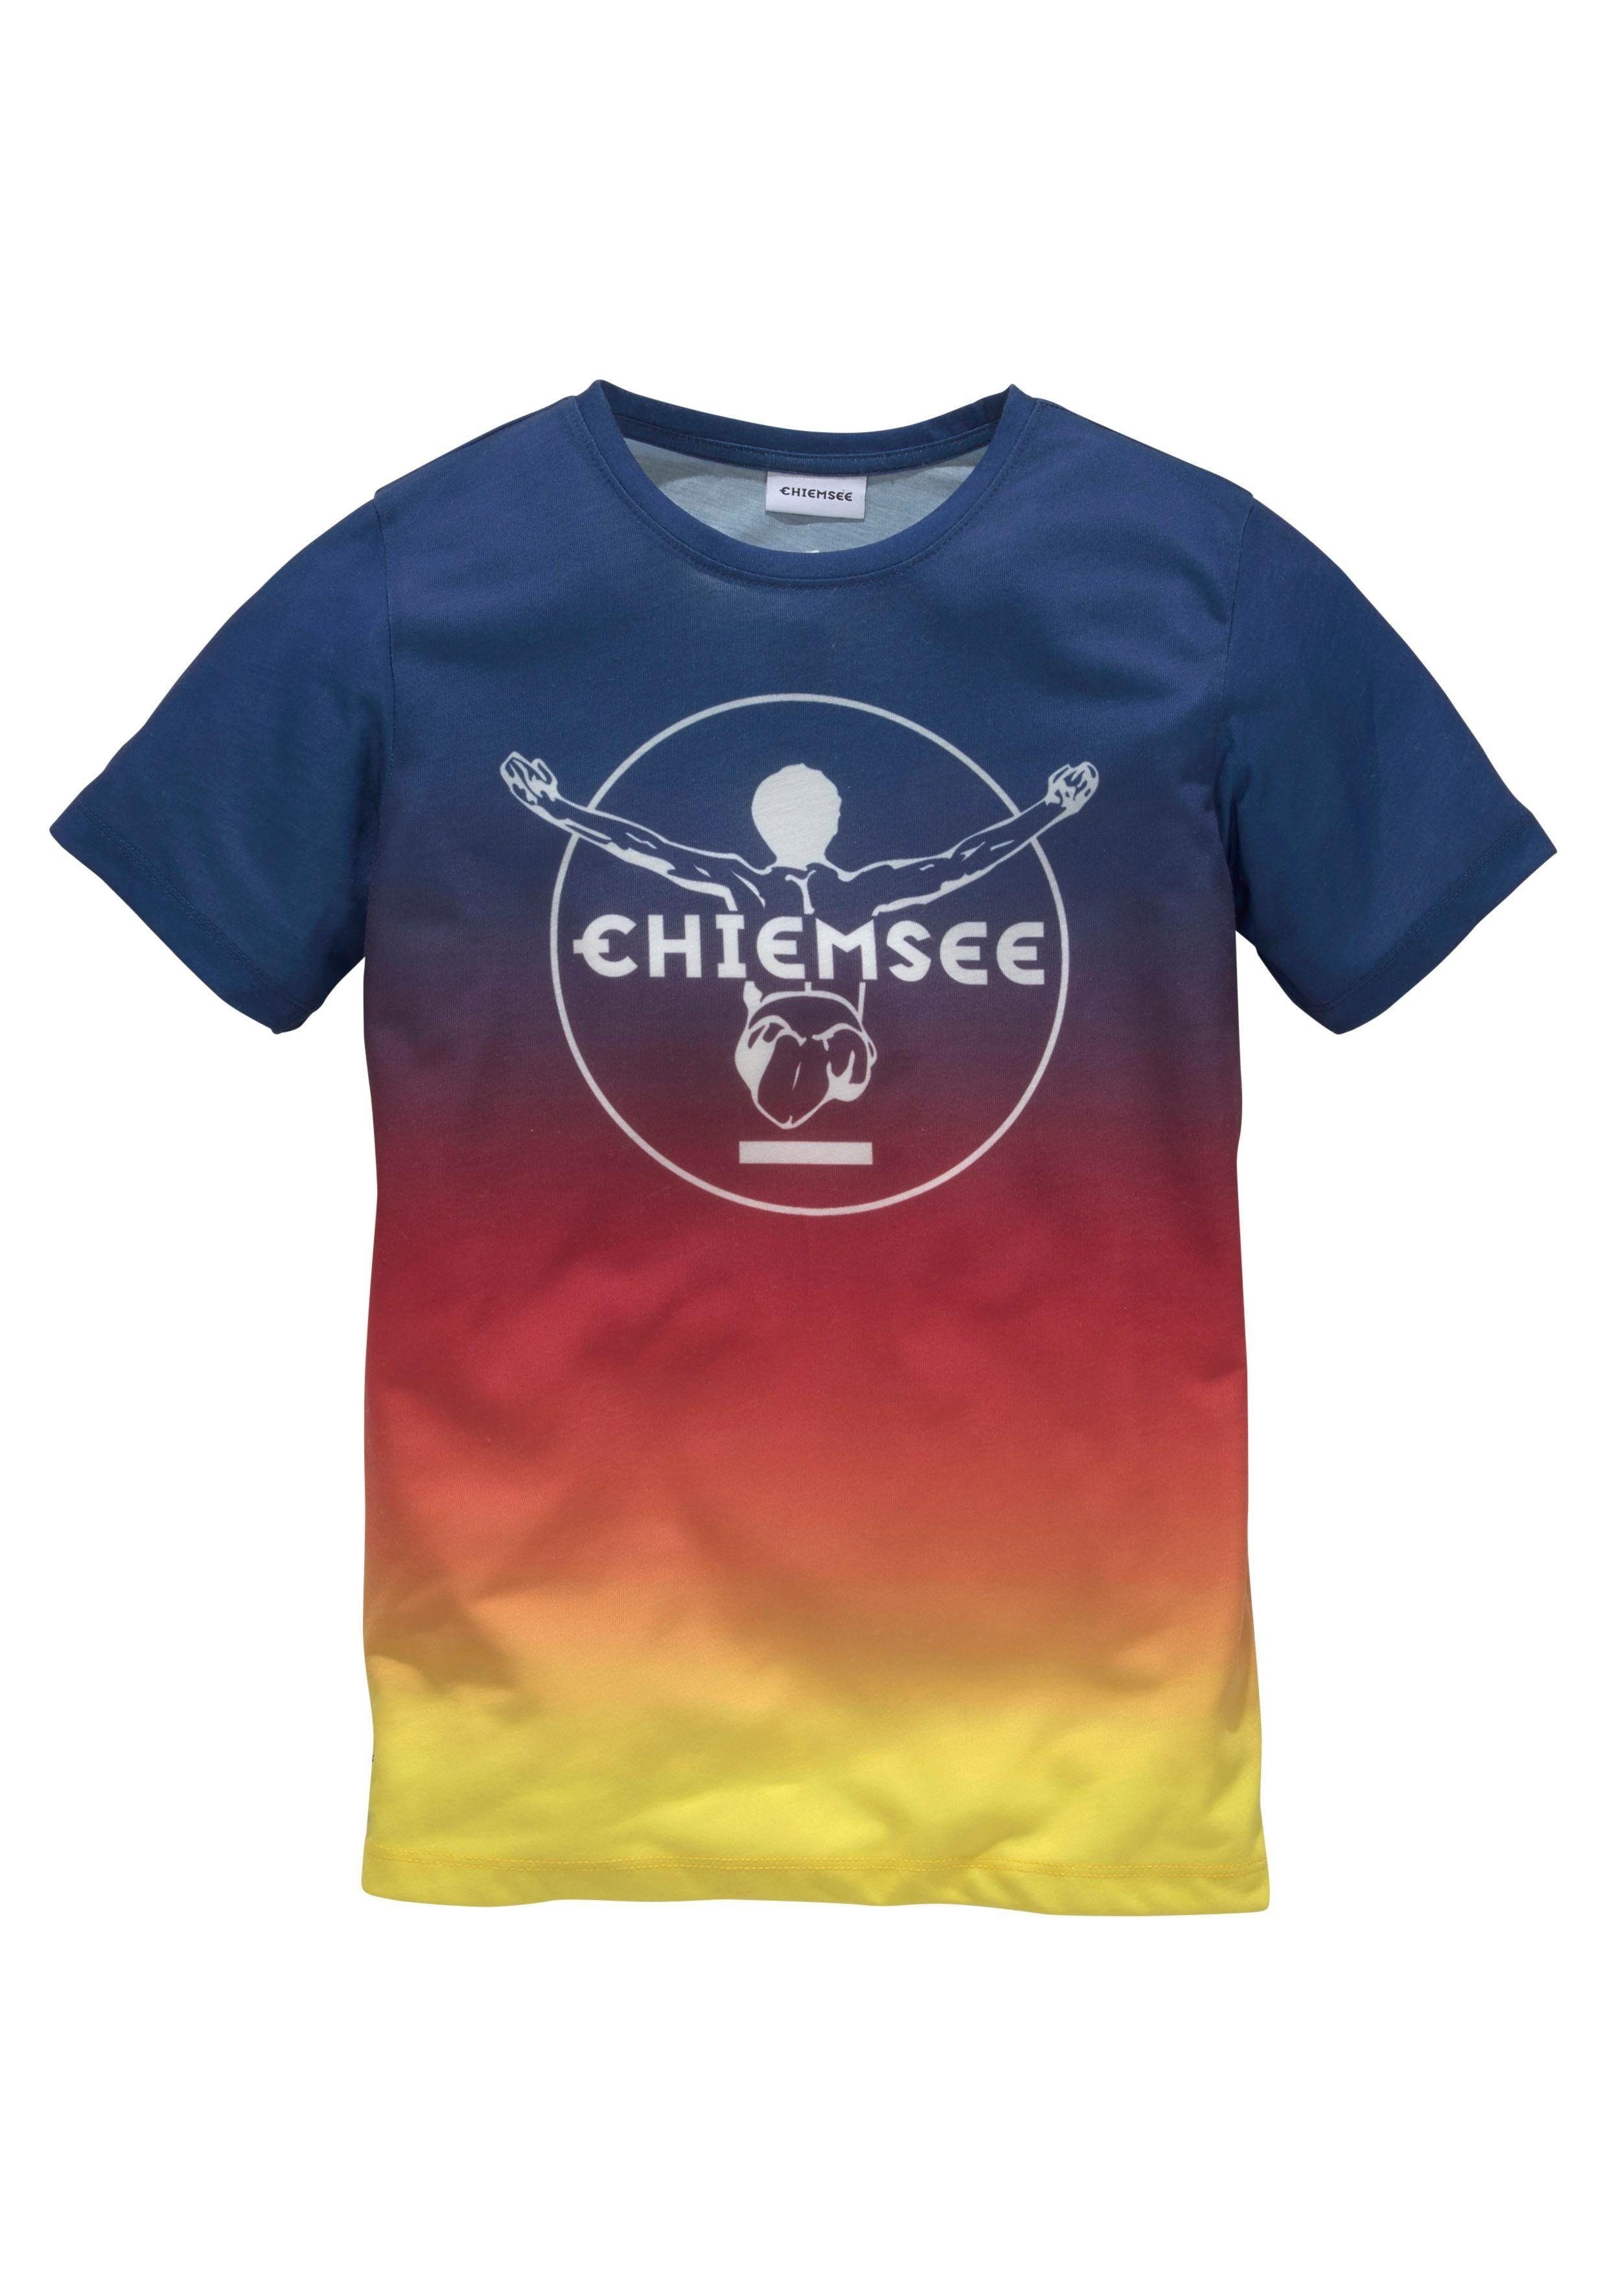 Chiemsee T-Shirt im Farbverlauf vorn Druck mit